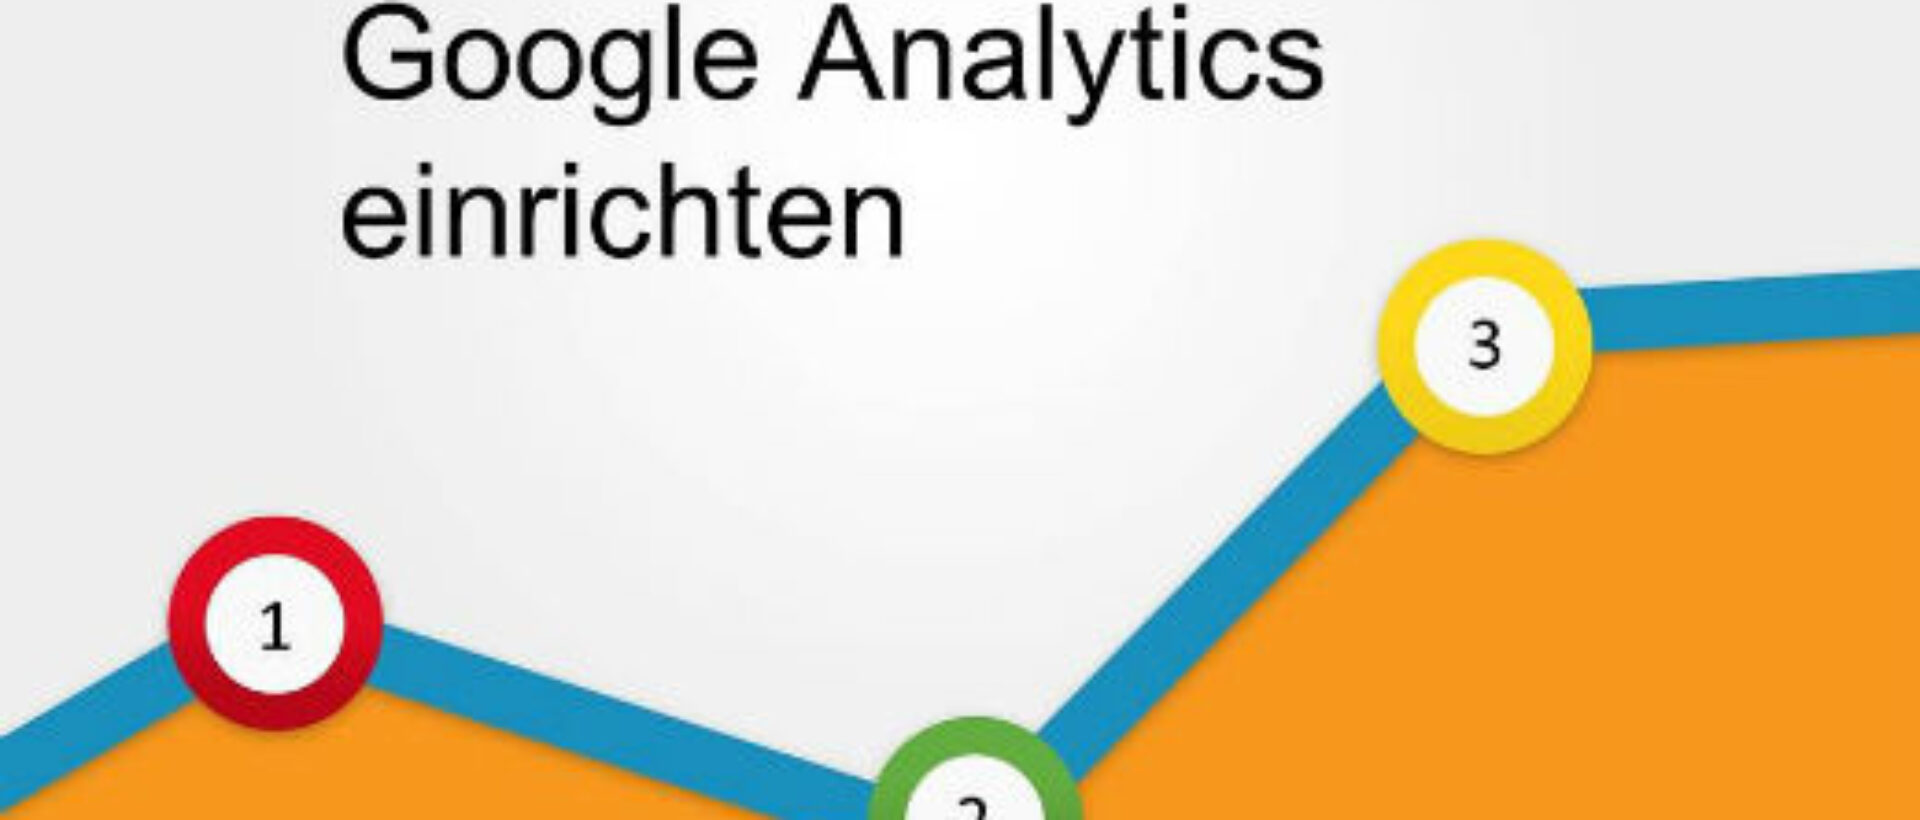 Google Analytics einrichten